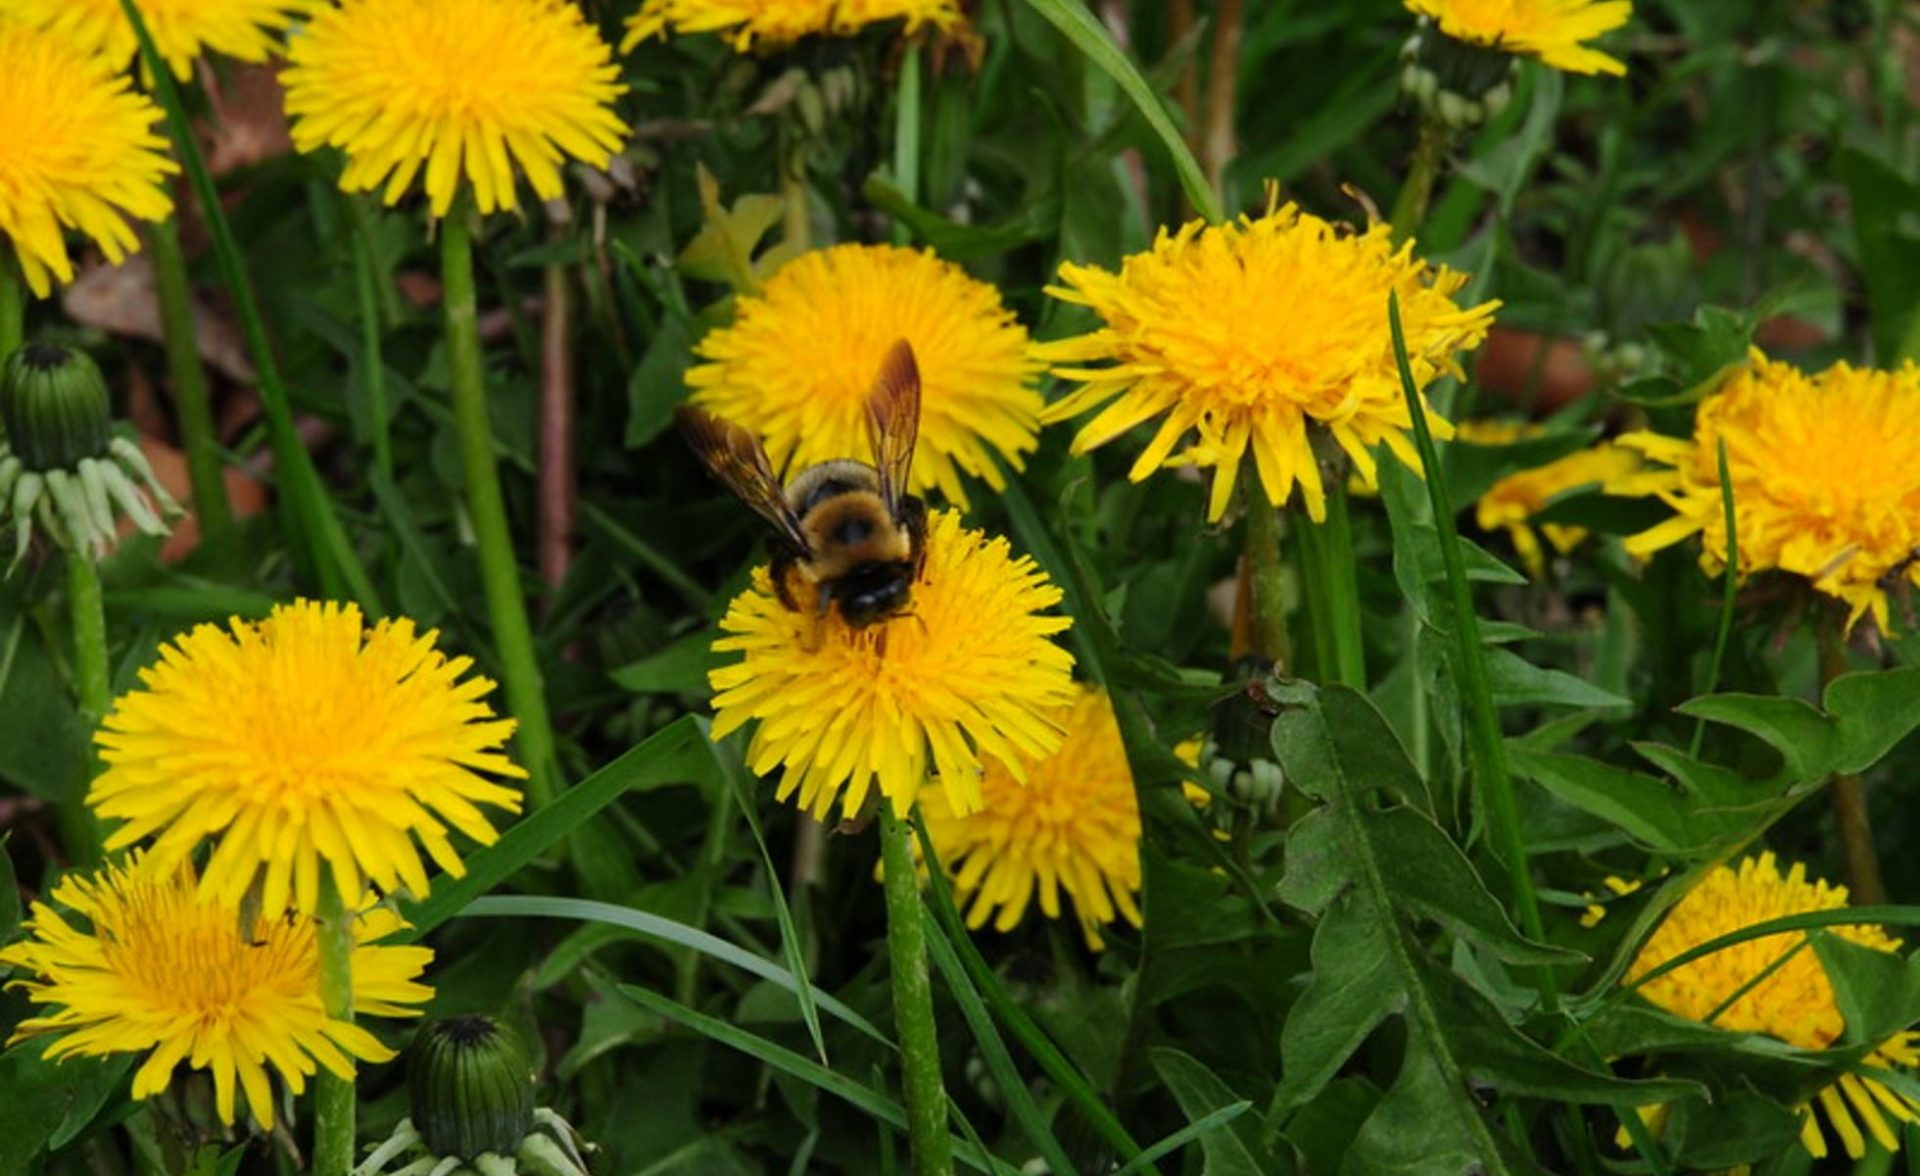 A bee on a dandelion, in dandelion filled yard.